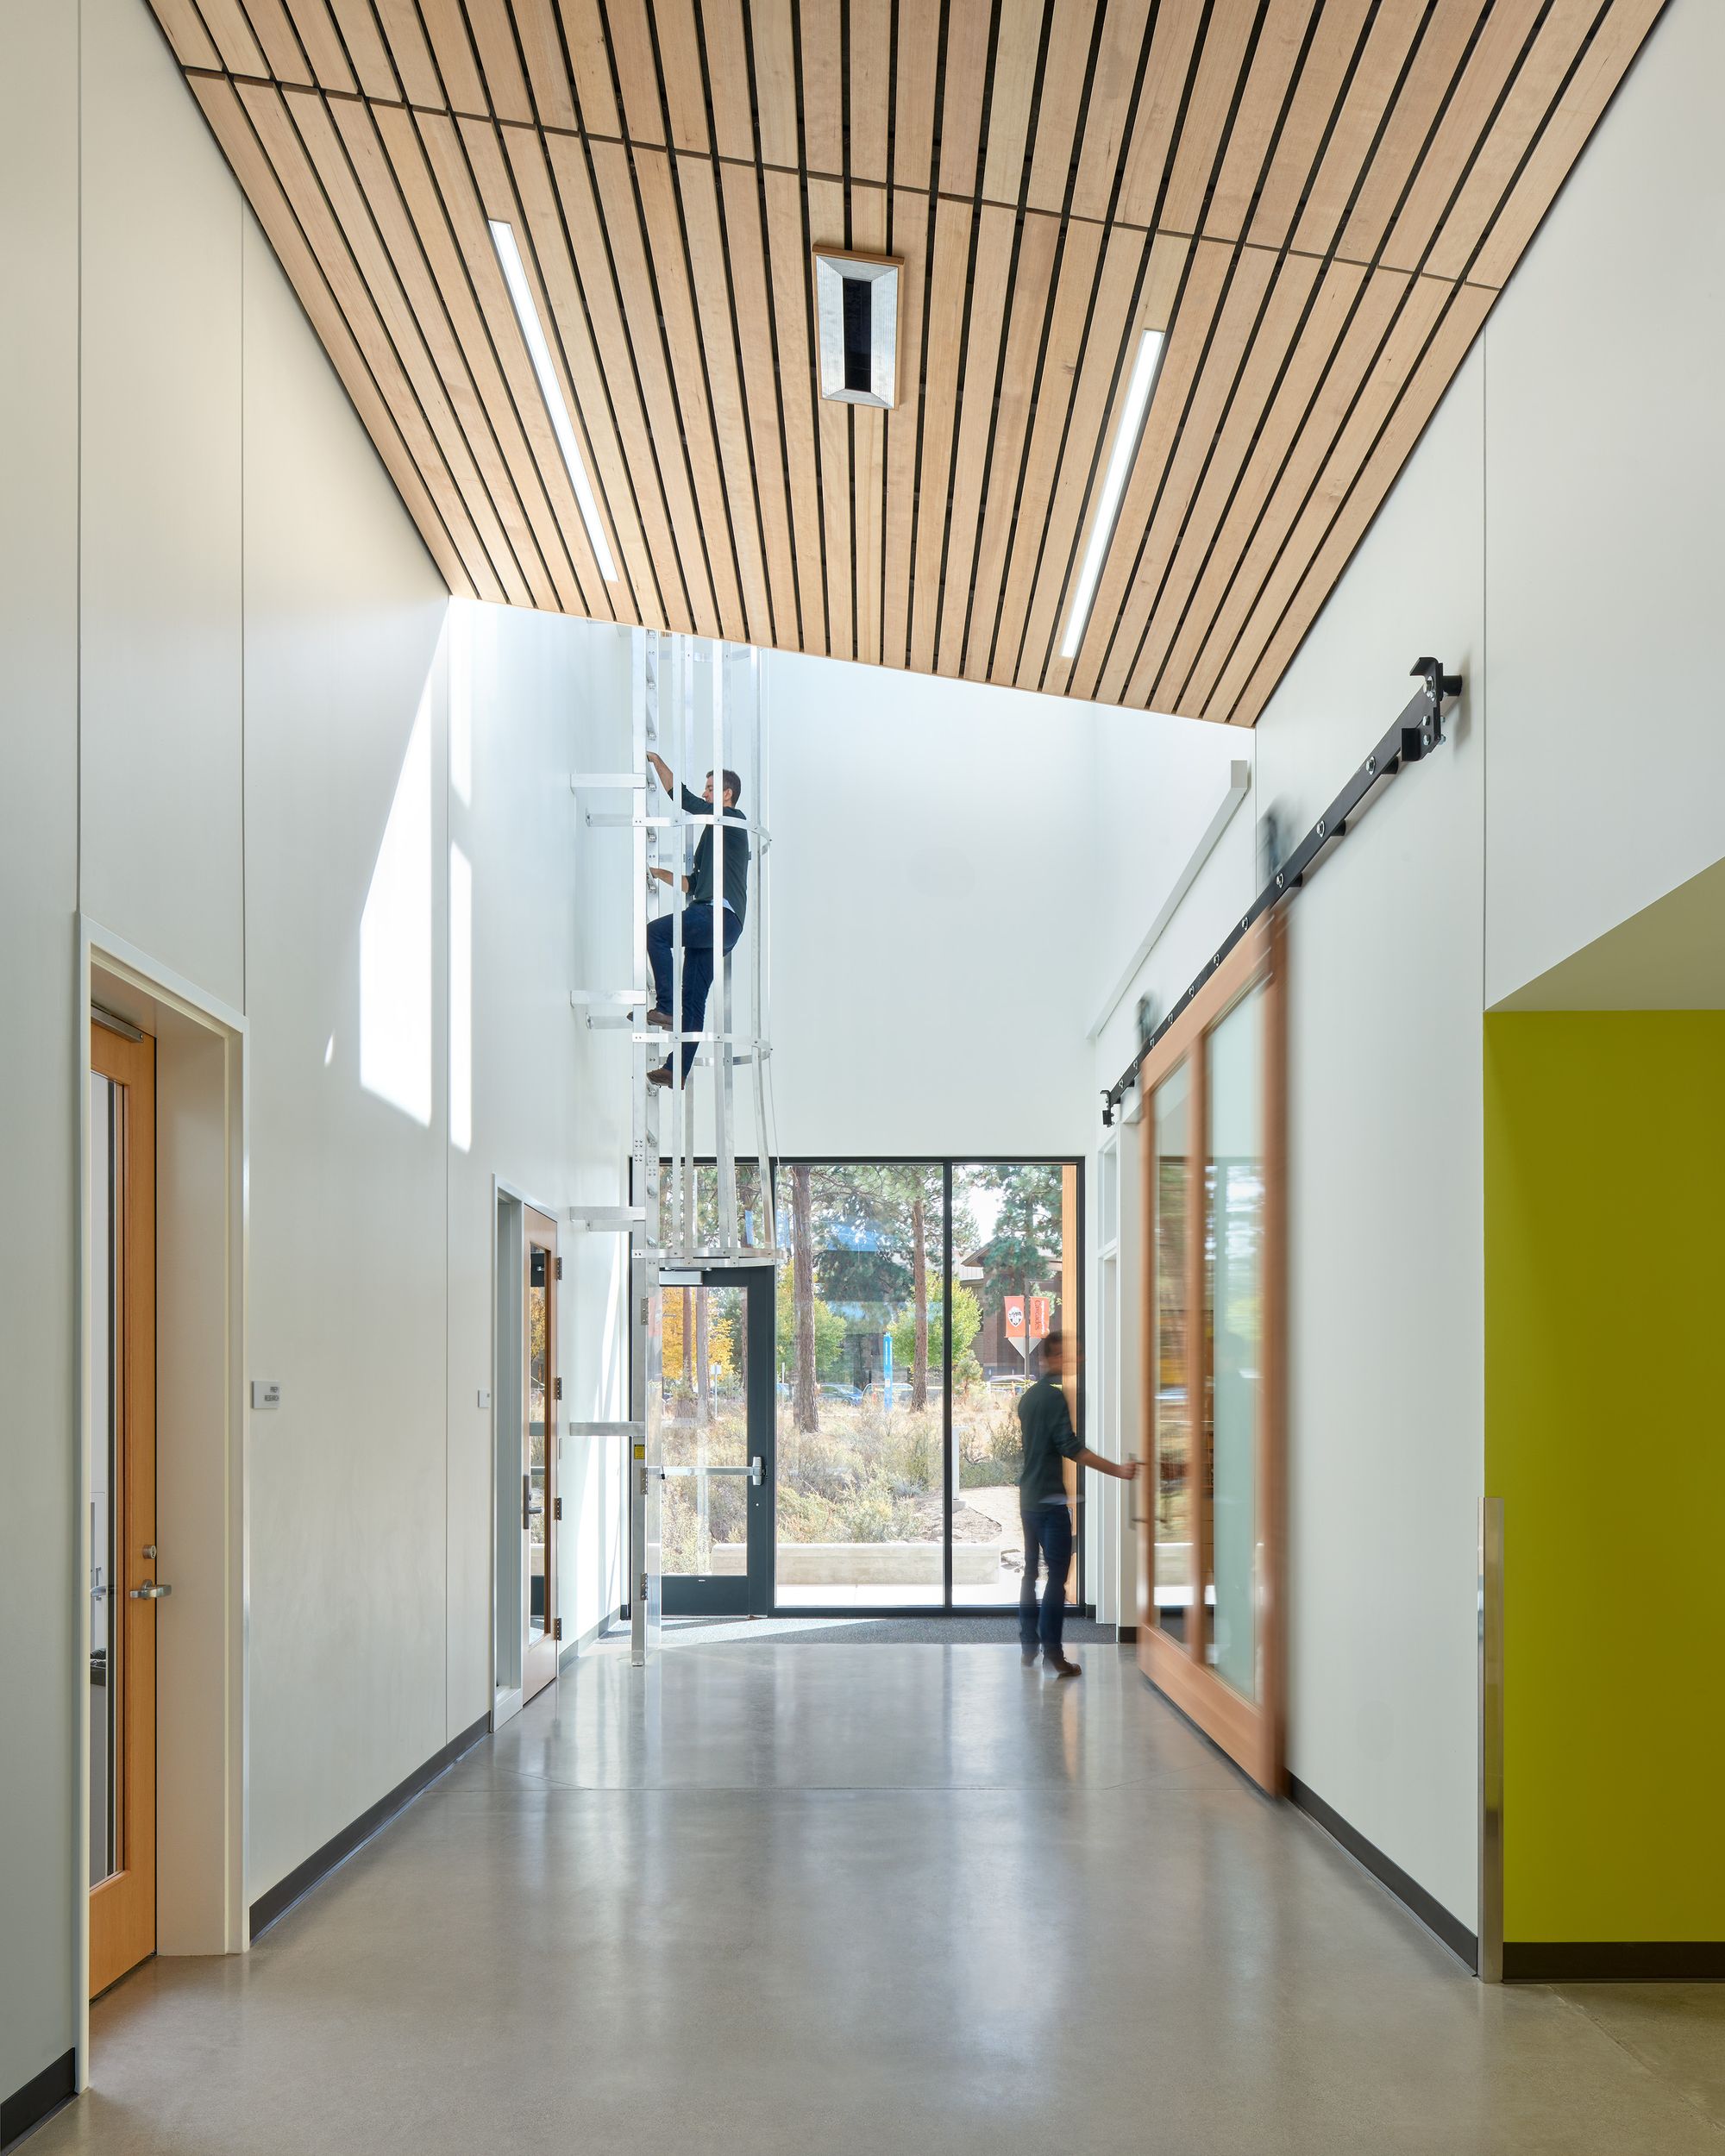 图片[6]|俄勒冈州立大学卡斯卡德校区-本德科学站|ART-Arrakis | 建筑室内设计的创新与灵感